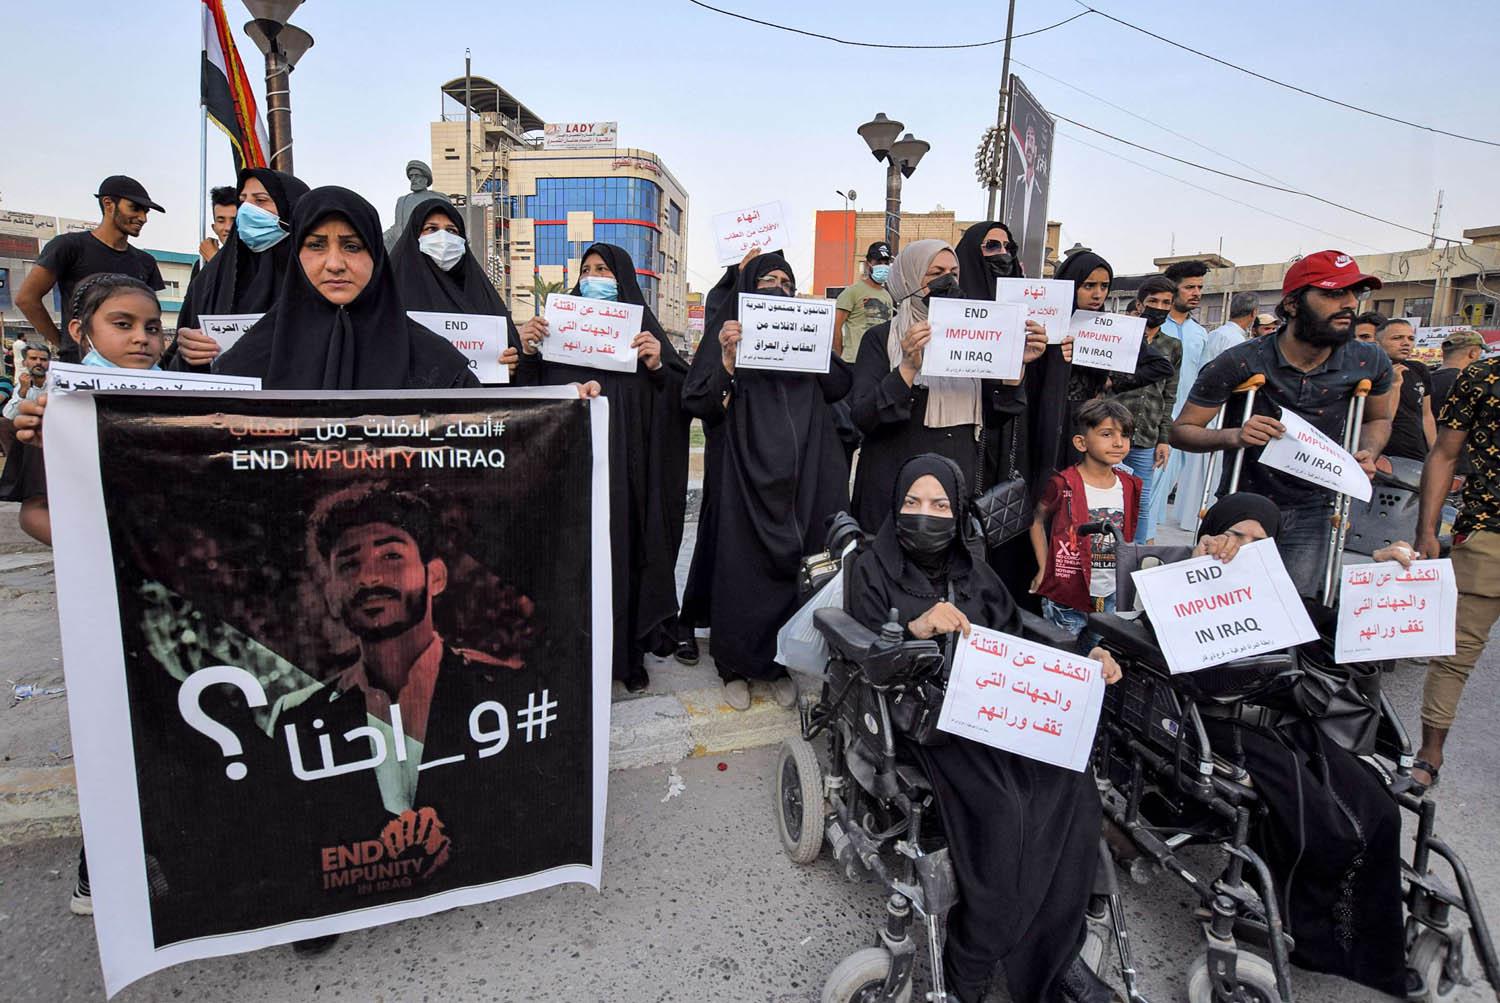 عراقيون يتظاهرون يطالبون بالتحقيق في قتل ابنائهم